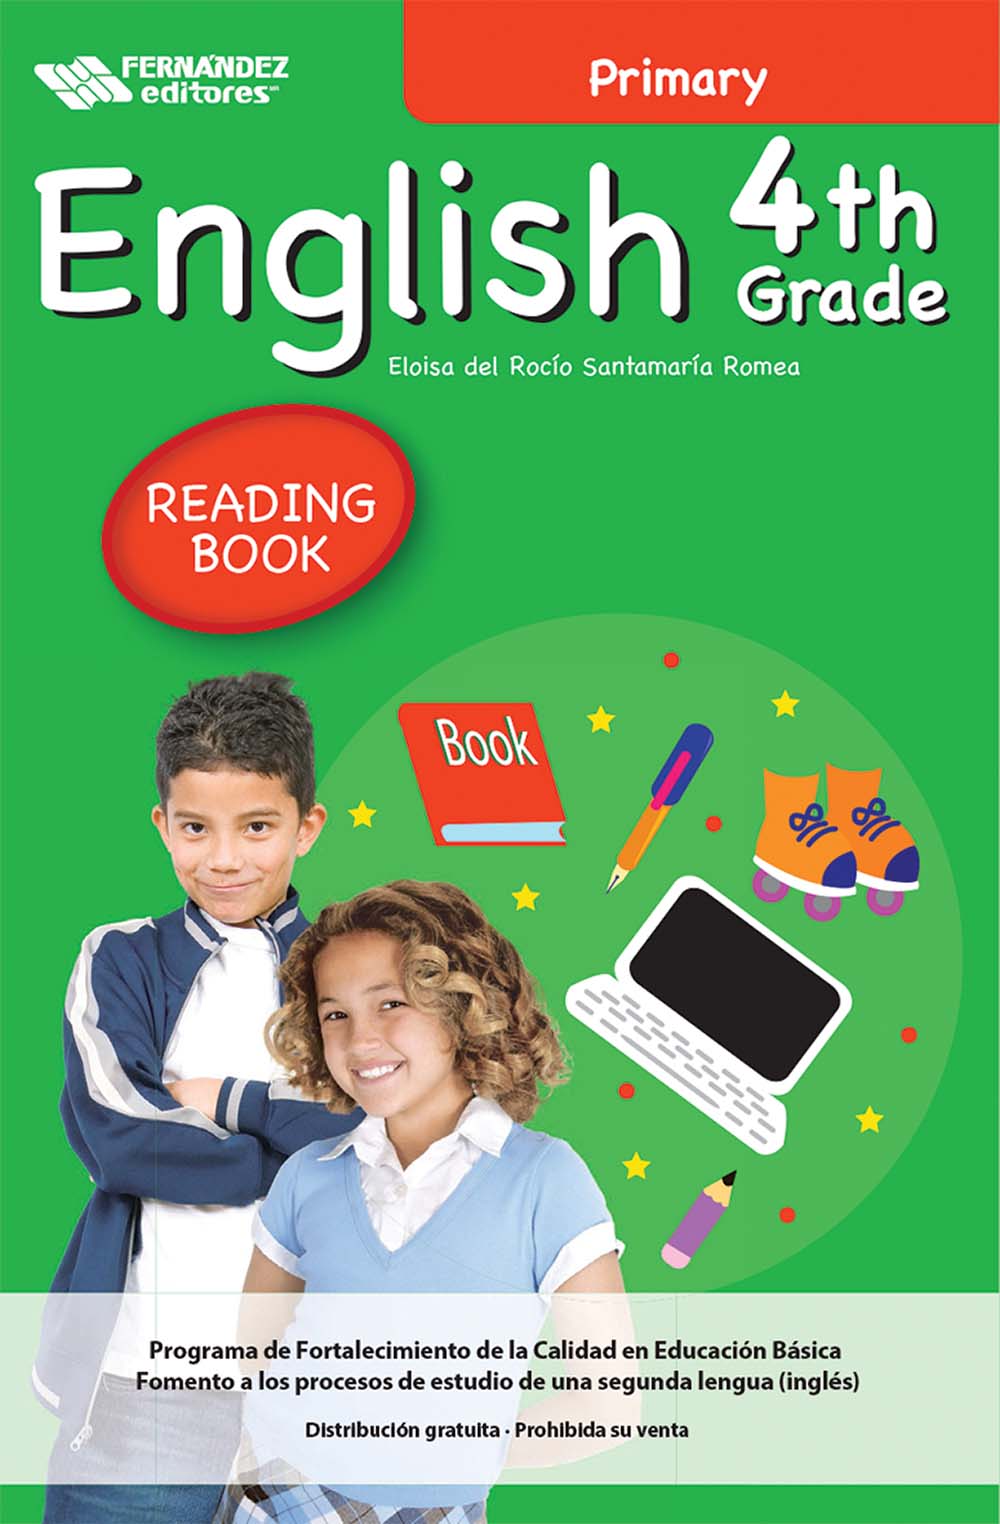 English 4th Grade Primary Libro de Lectura, Editorial: Fernández Editores, Nivel: Primaria, Grado: 4